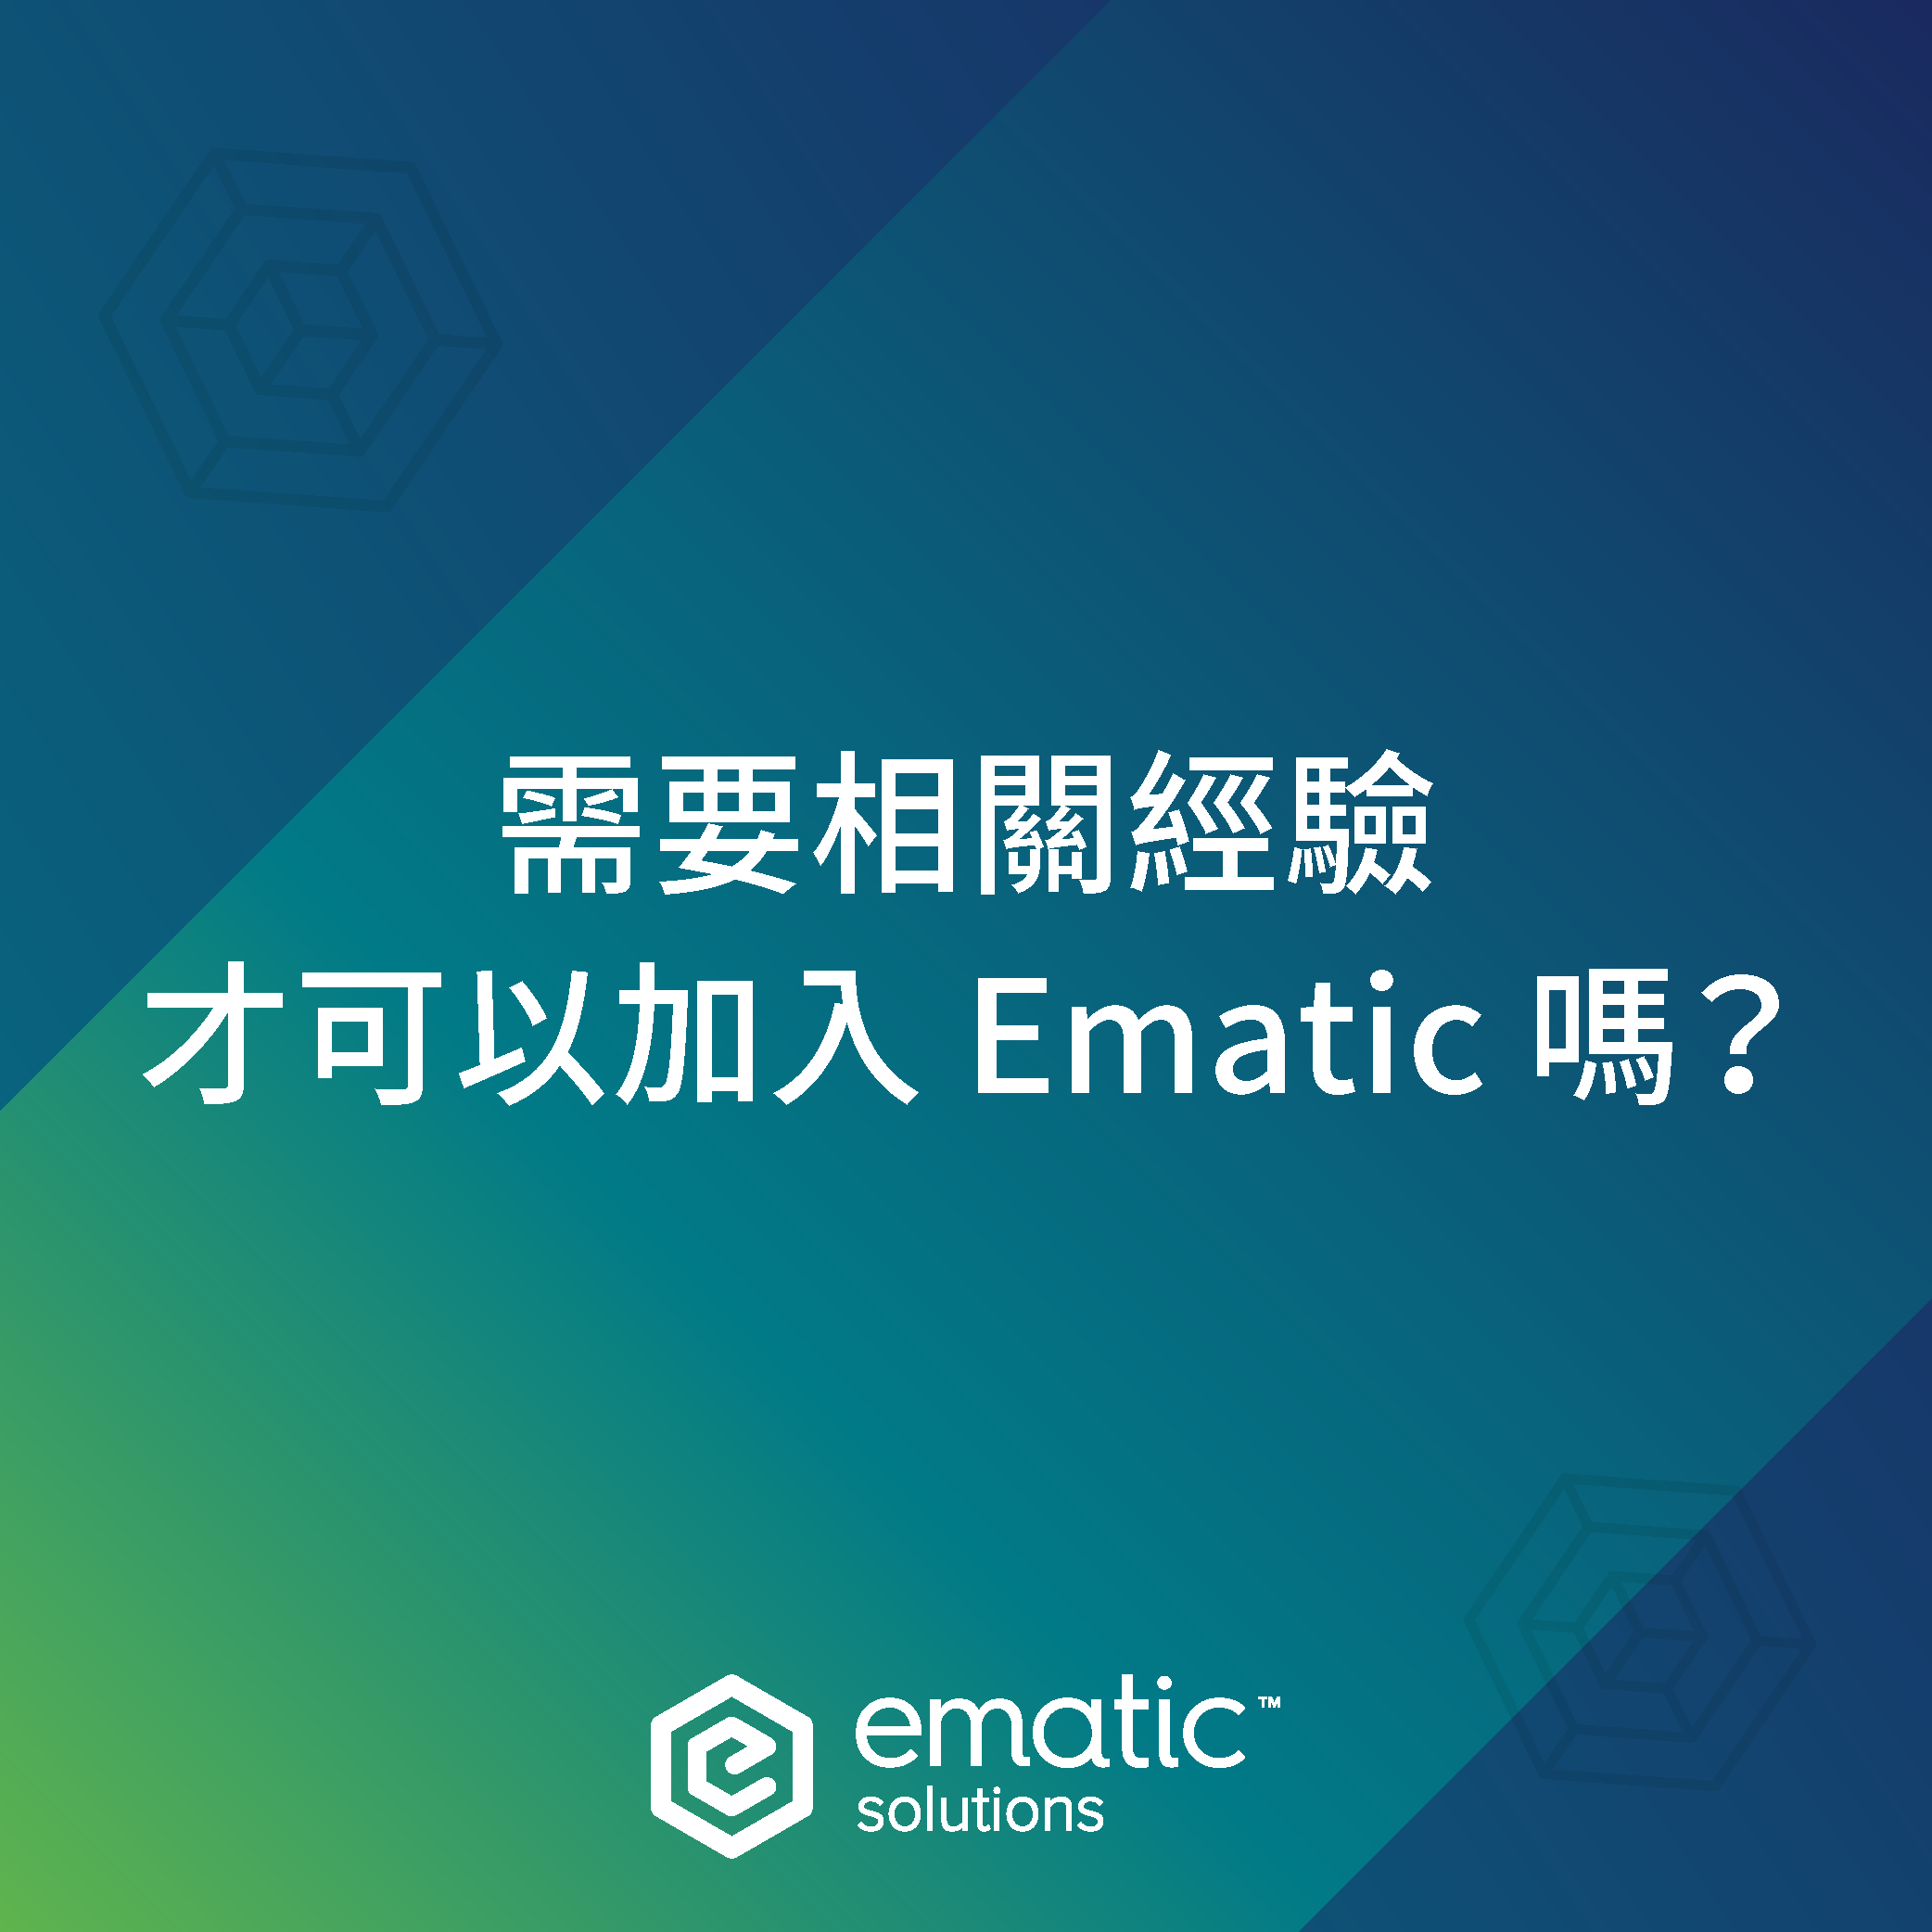 需要相關經驗才可以加入 Ematic 嗎？